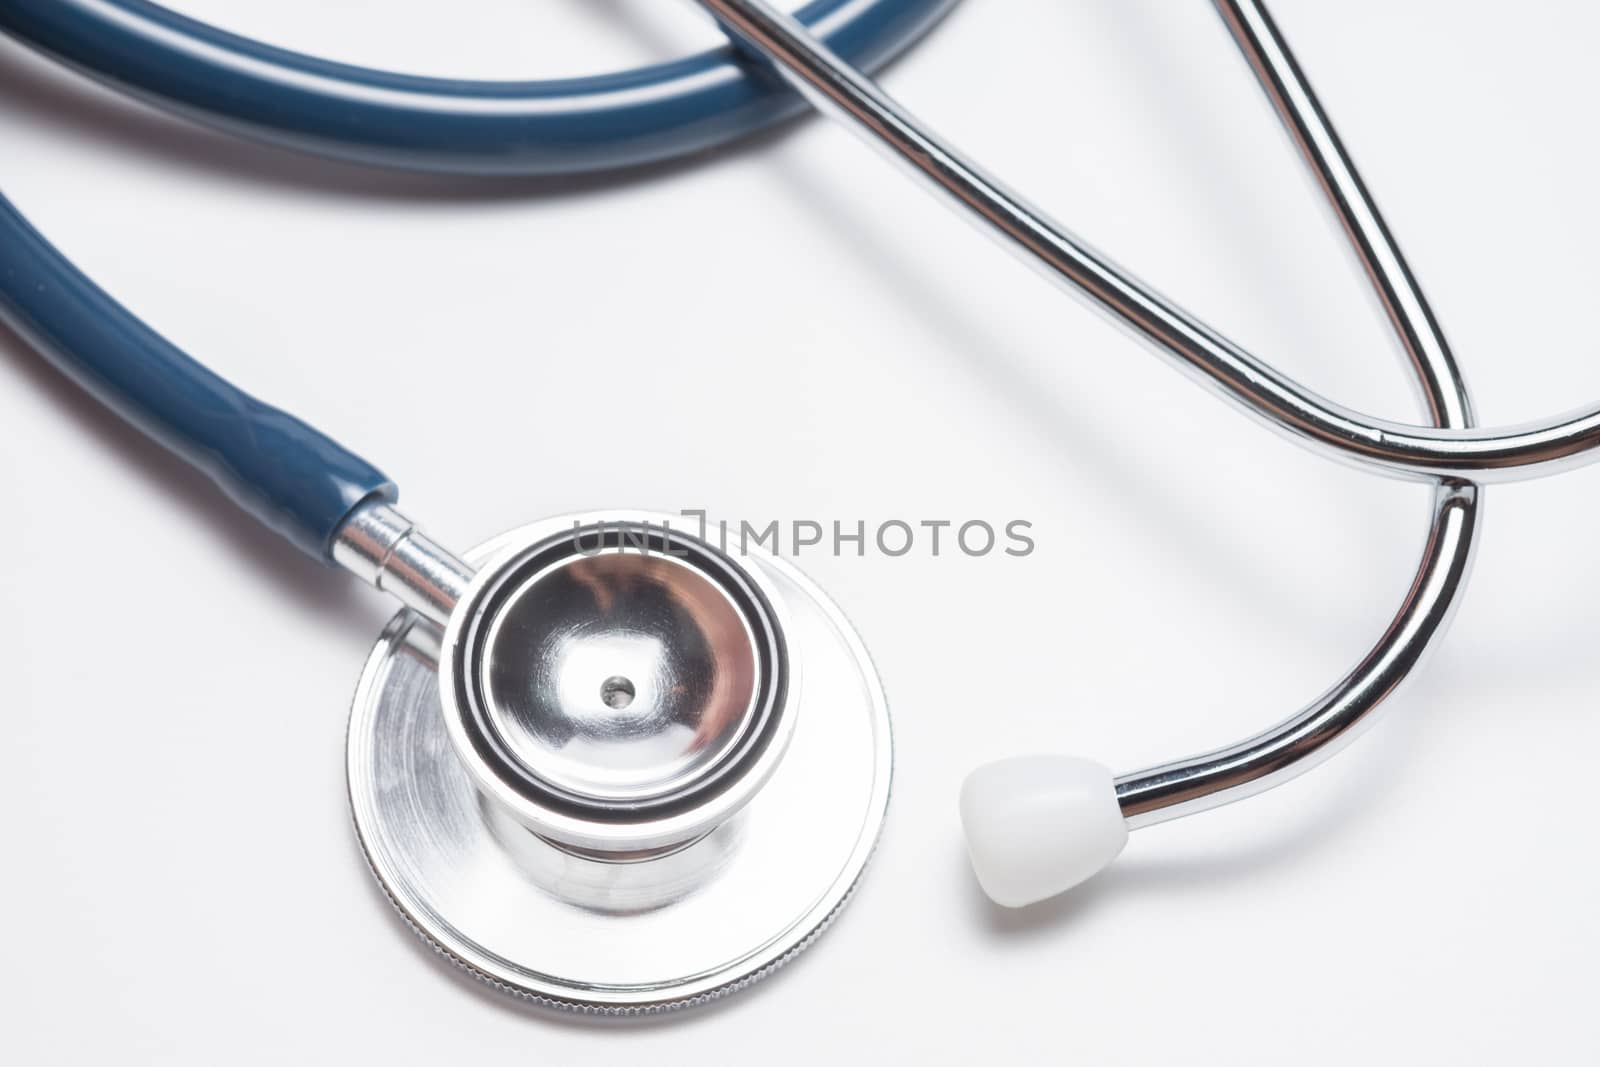 Blue stethoscope on white background.